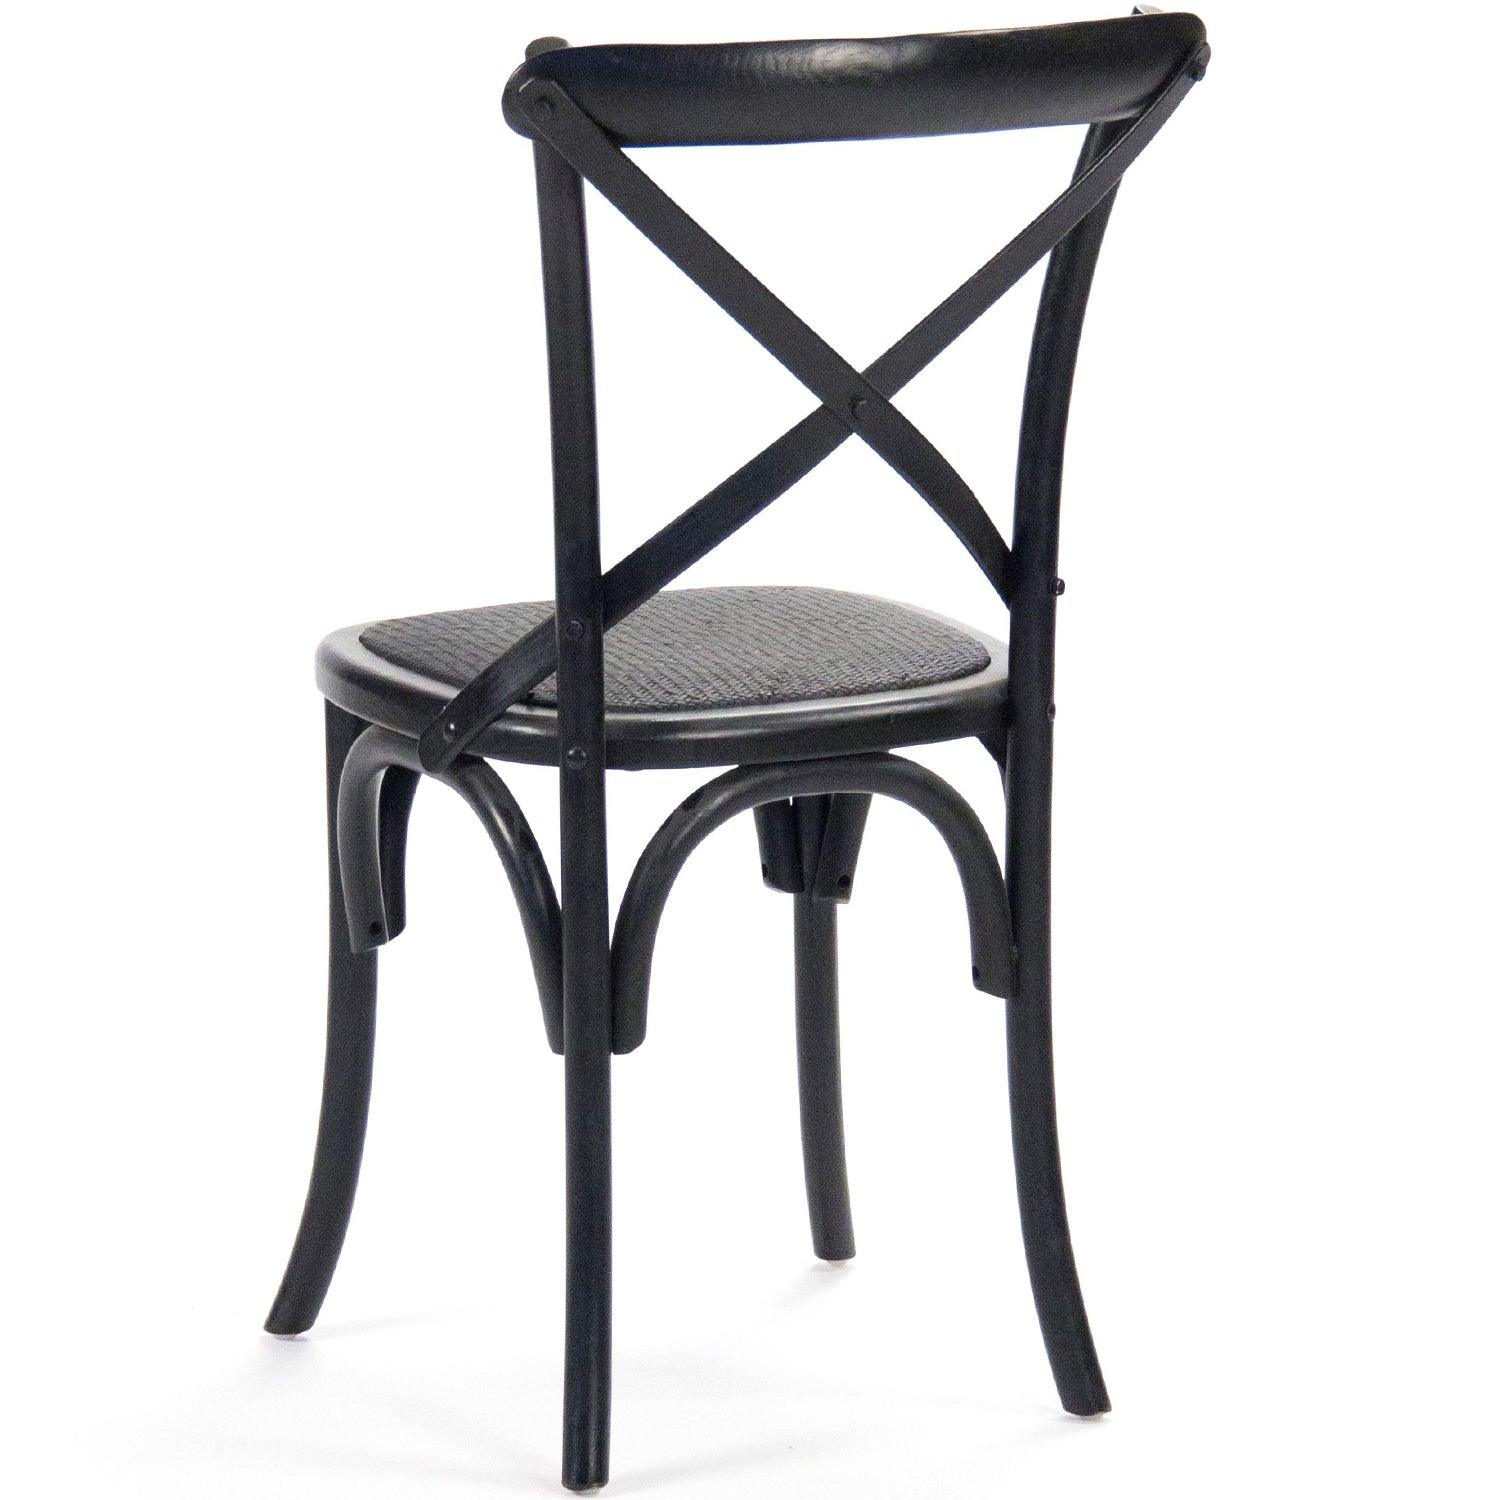 Black Parisian Cafe Chairs - Belle Escape